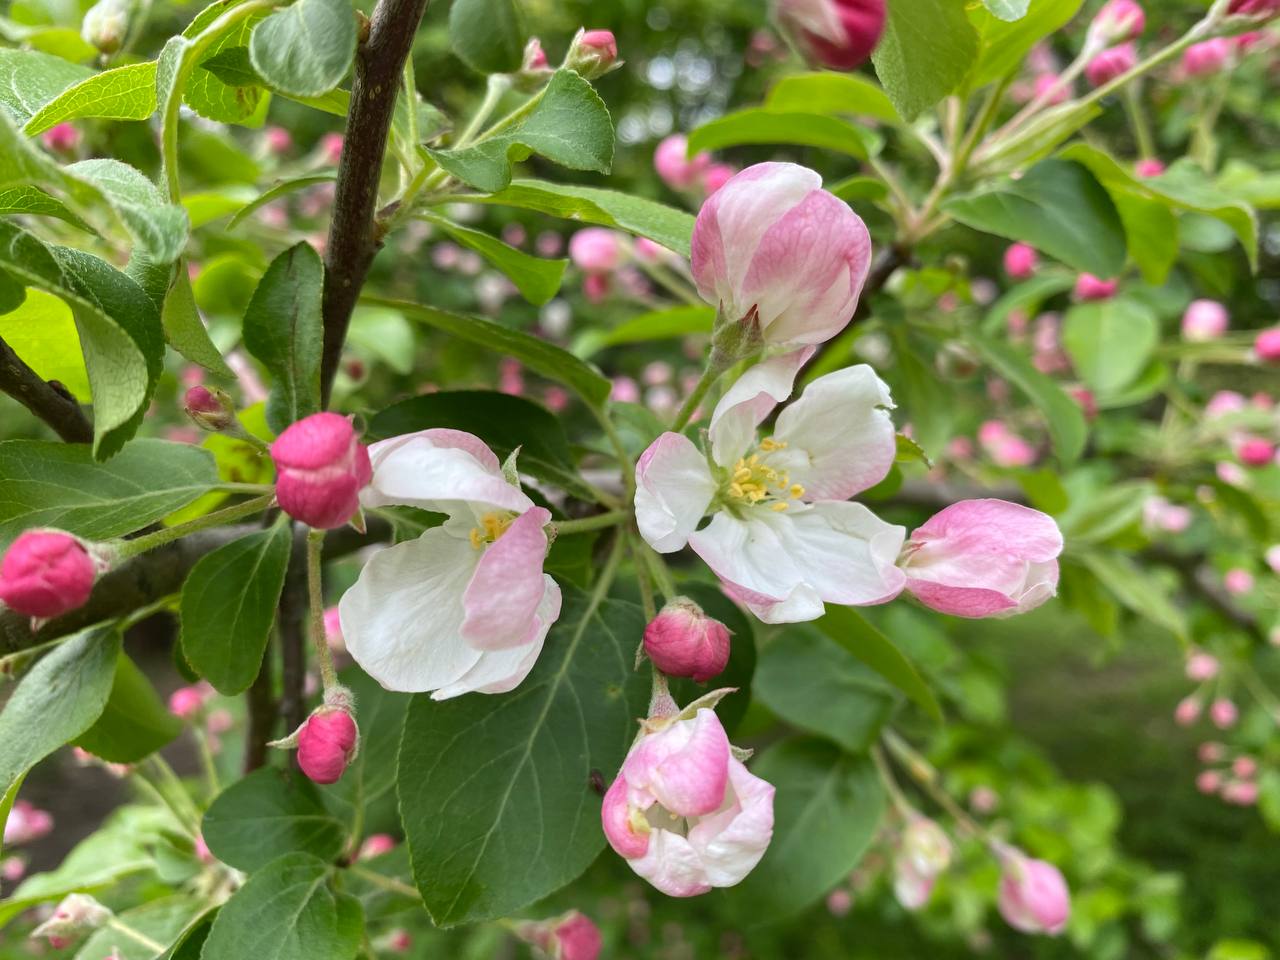 Цветение спиреи серой и яблони ягодной началось в Бирюлевском дендропарке